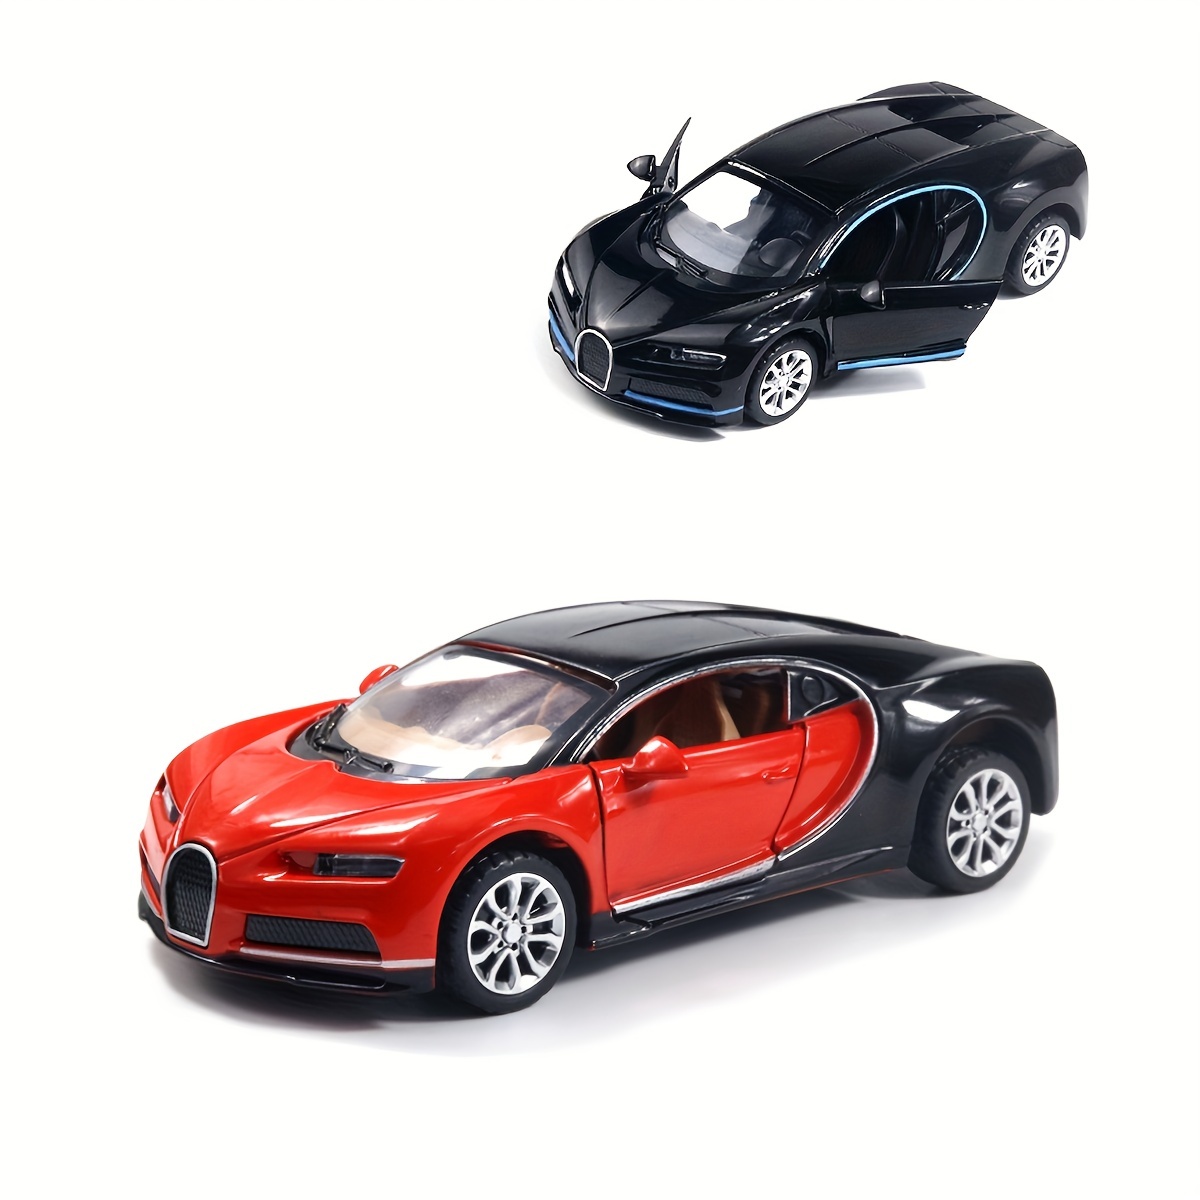 Juguete de coche modelo 3 a escala 1:32 con sonido y luz, mini vehículos de  aleación fundidos a troquel juguetes para regalo de niños o colección de